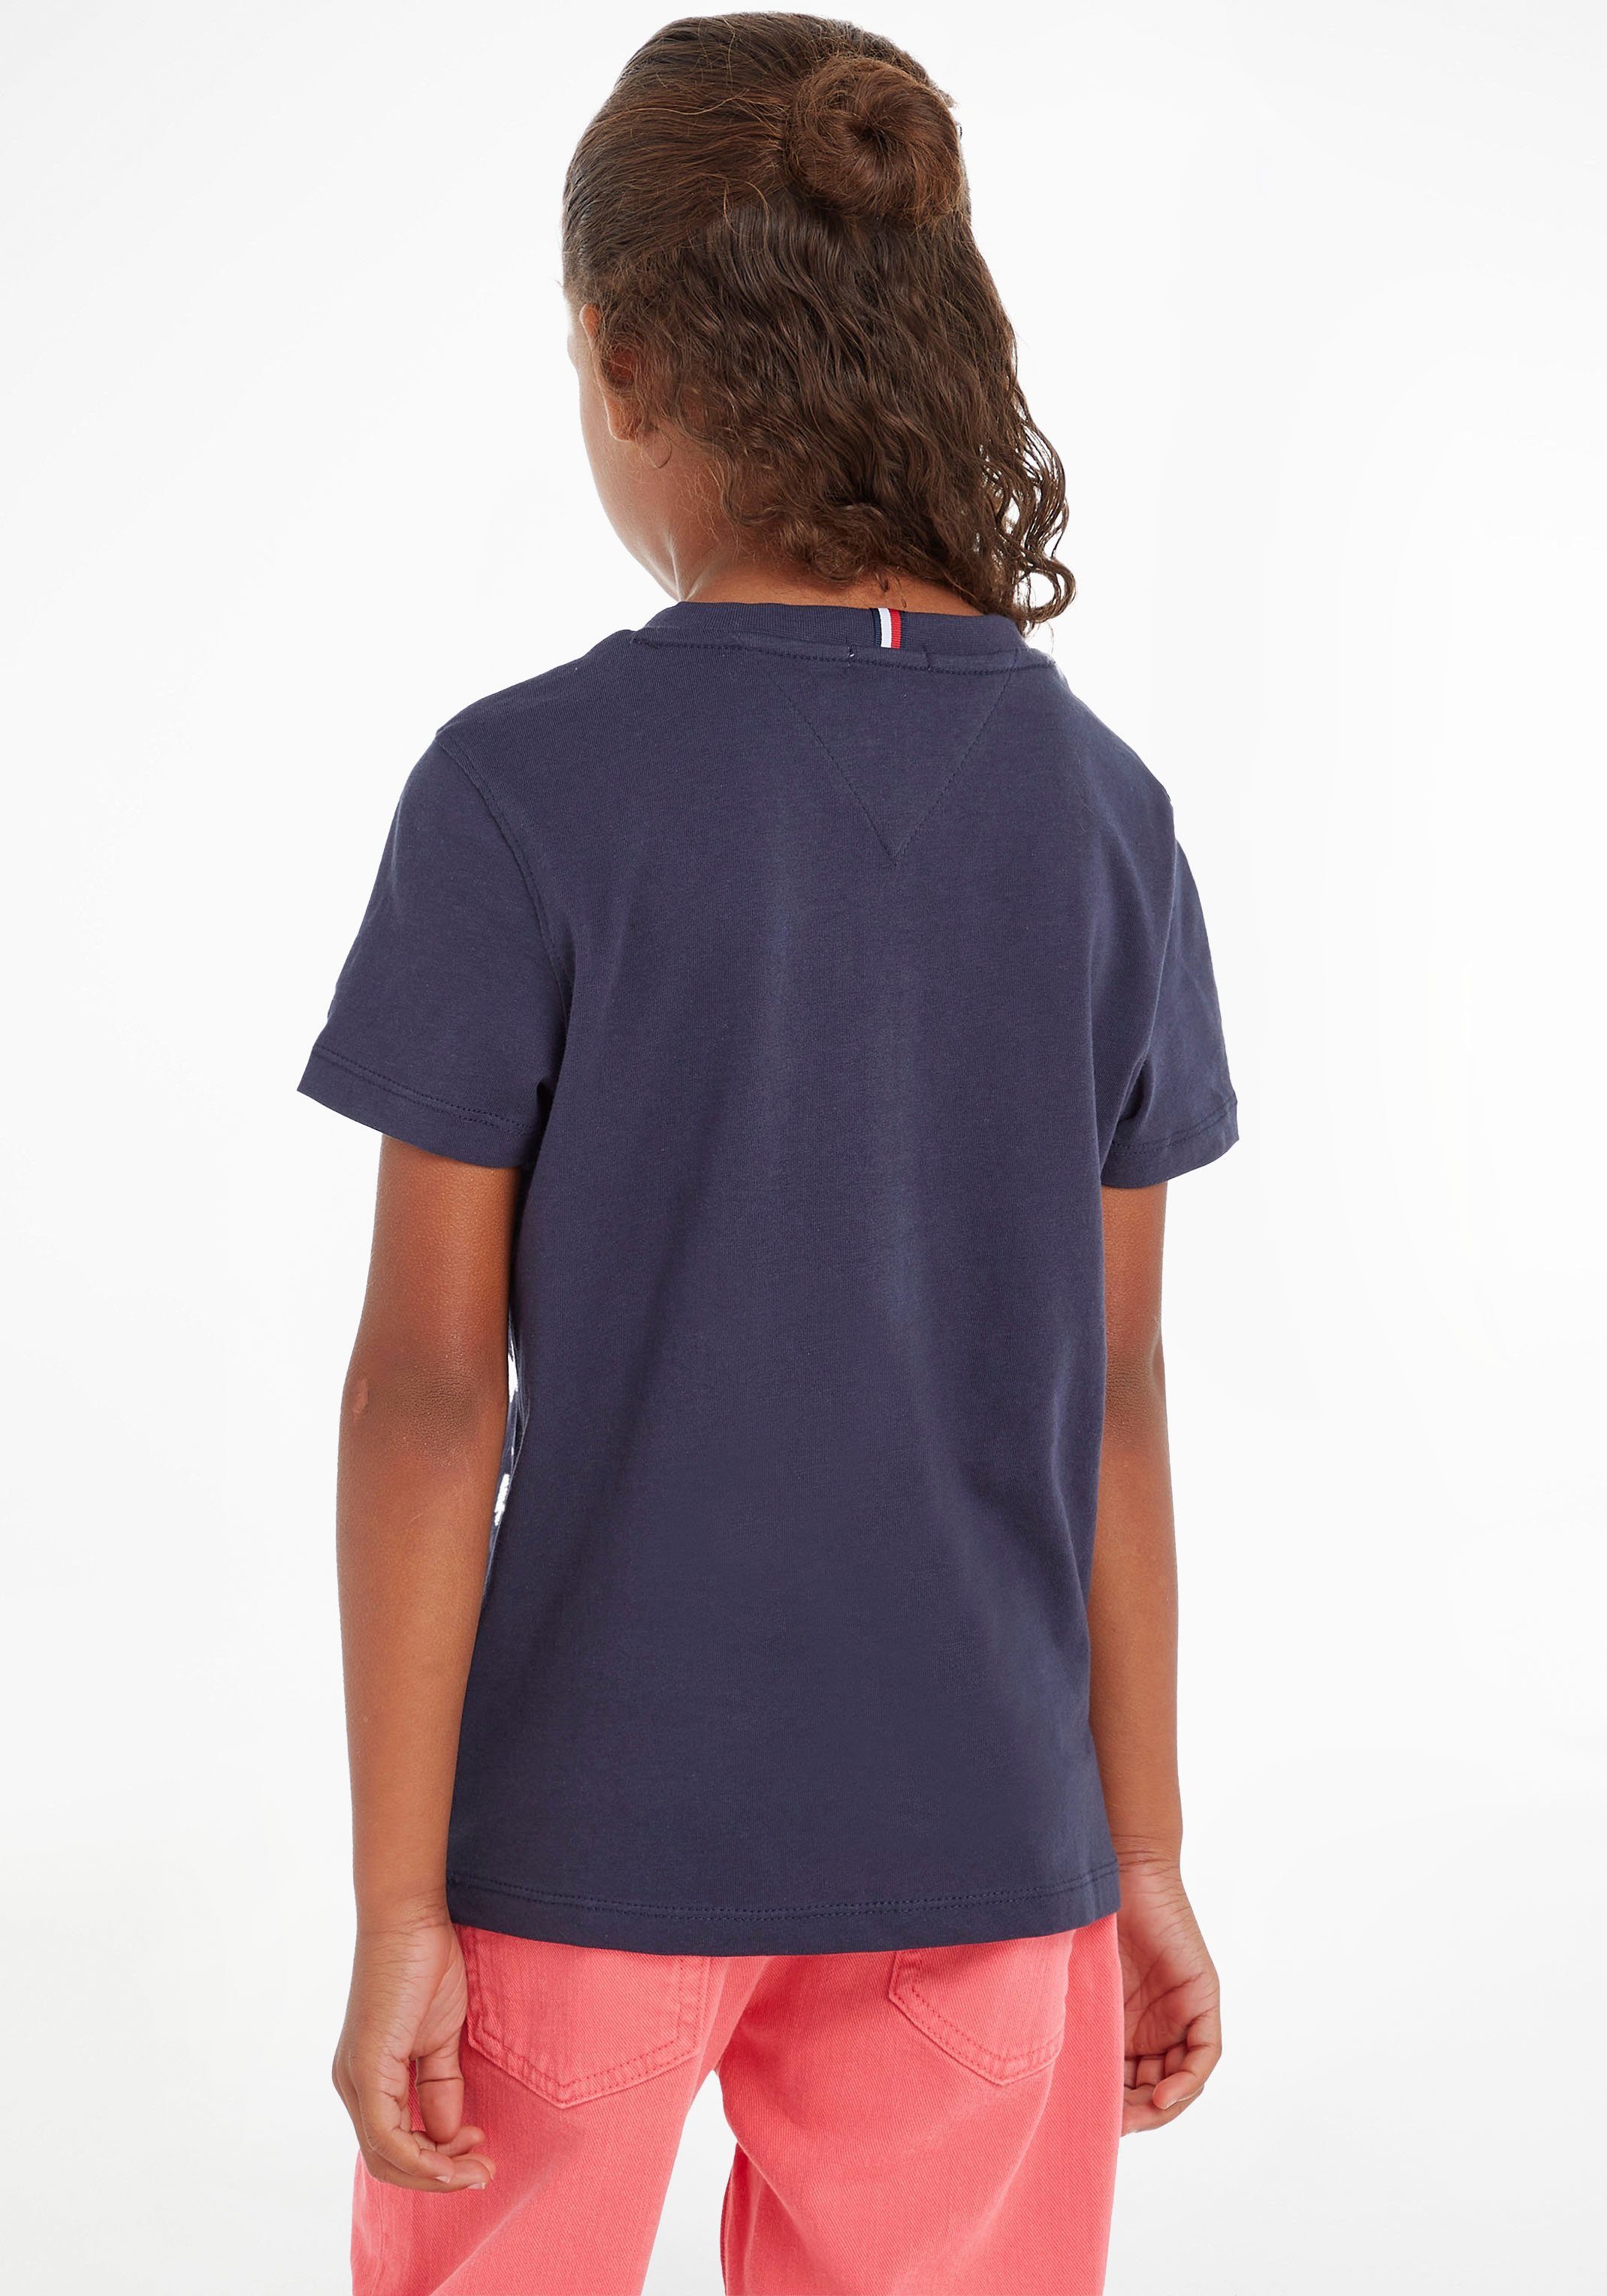 T-Shirt Junior Kinder Kids ESSENTIAL Mädchen TEE MiniMe,für Hilfiger Tommy und Jungen